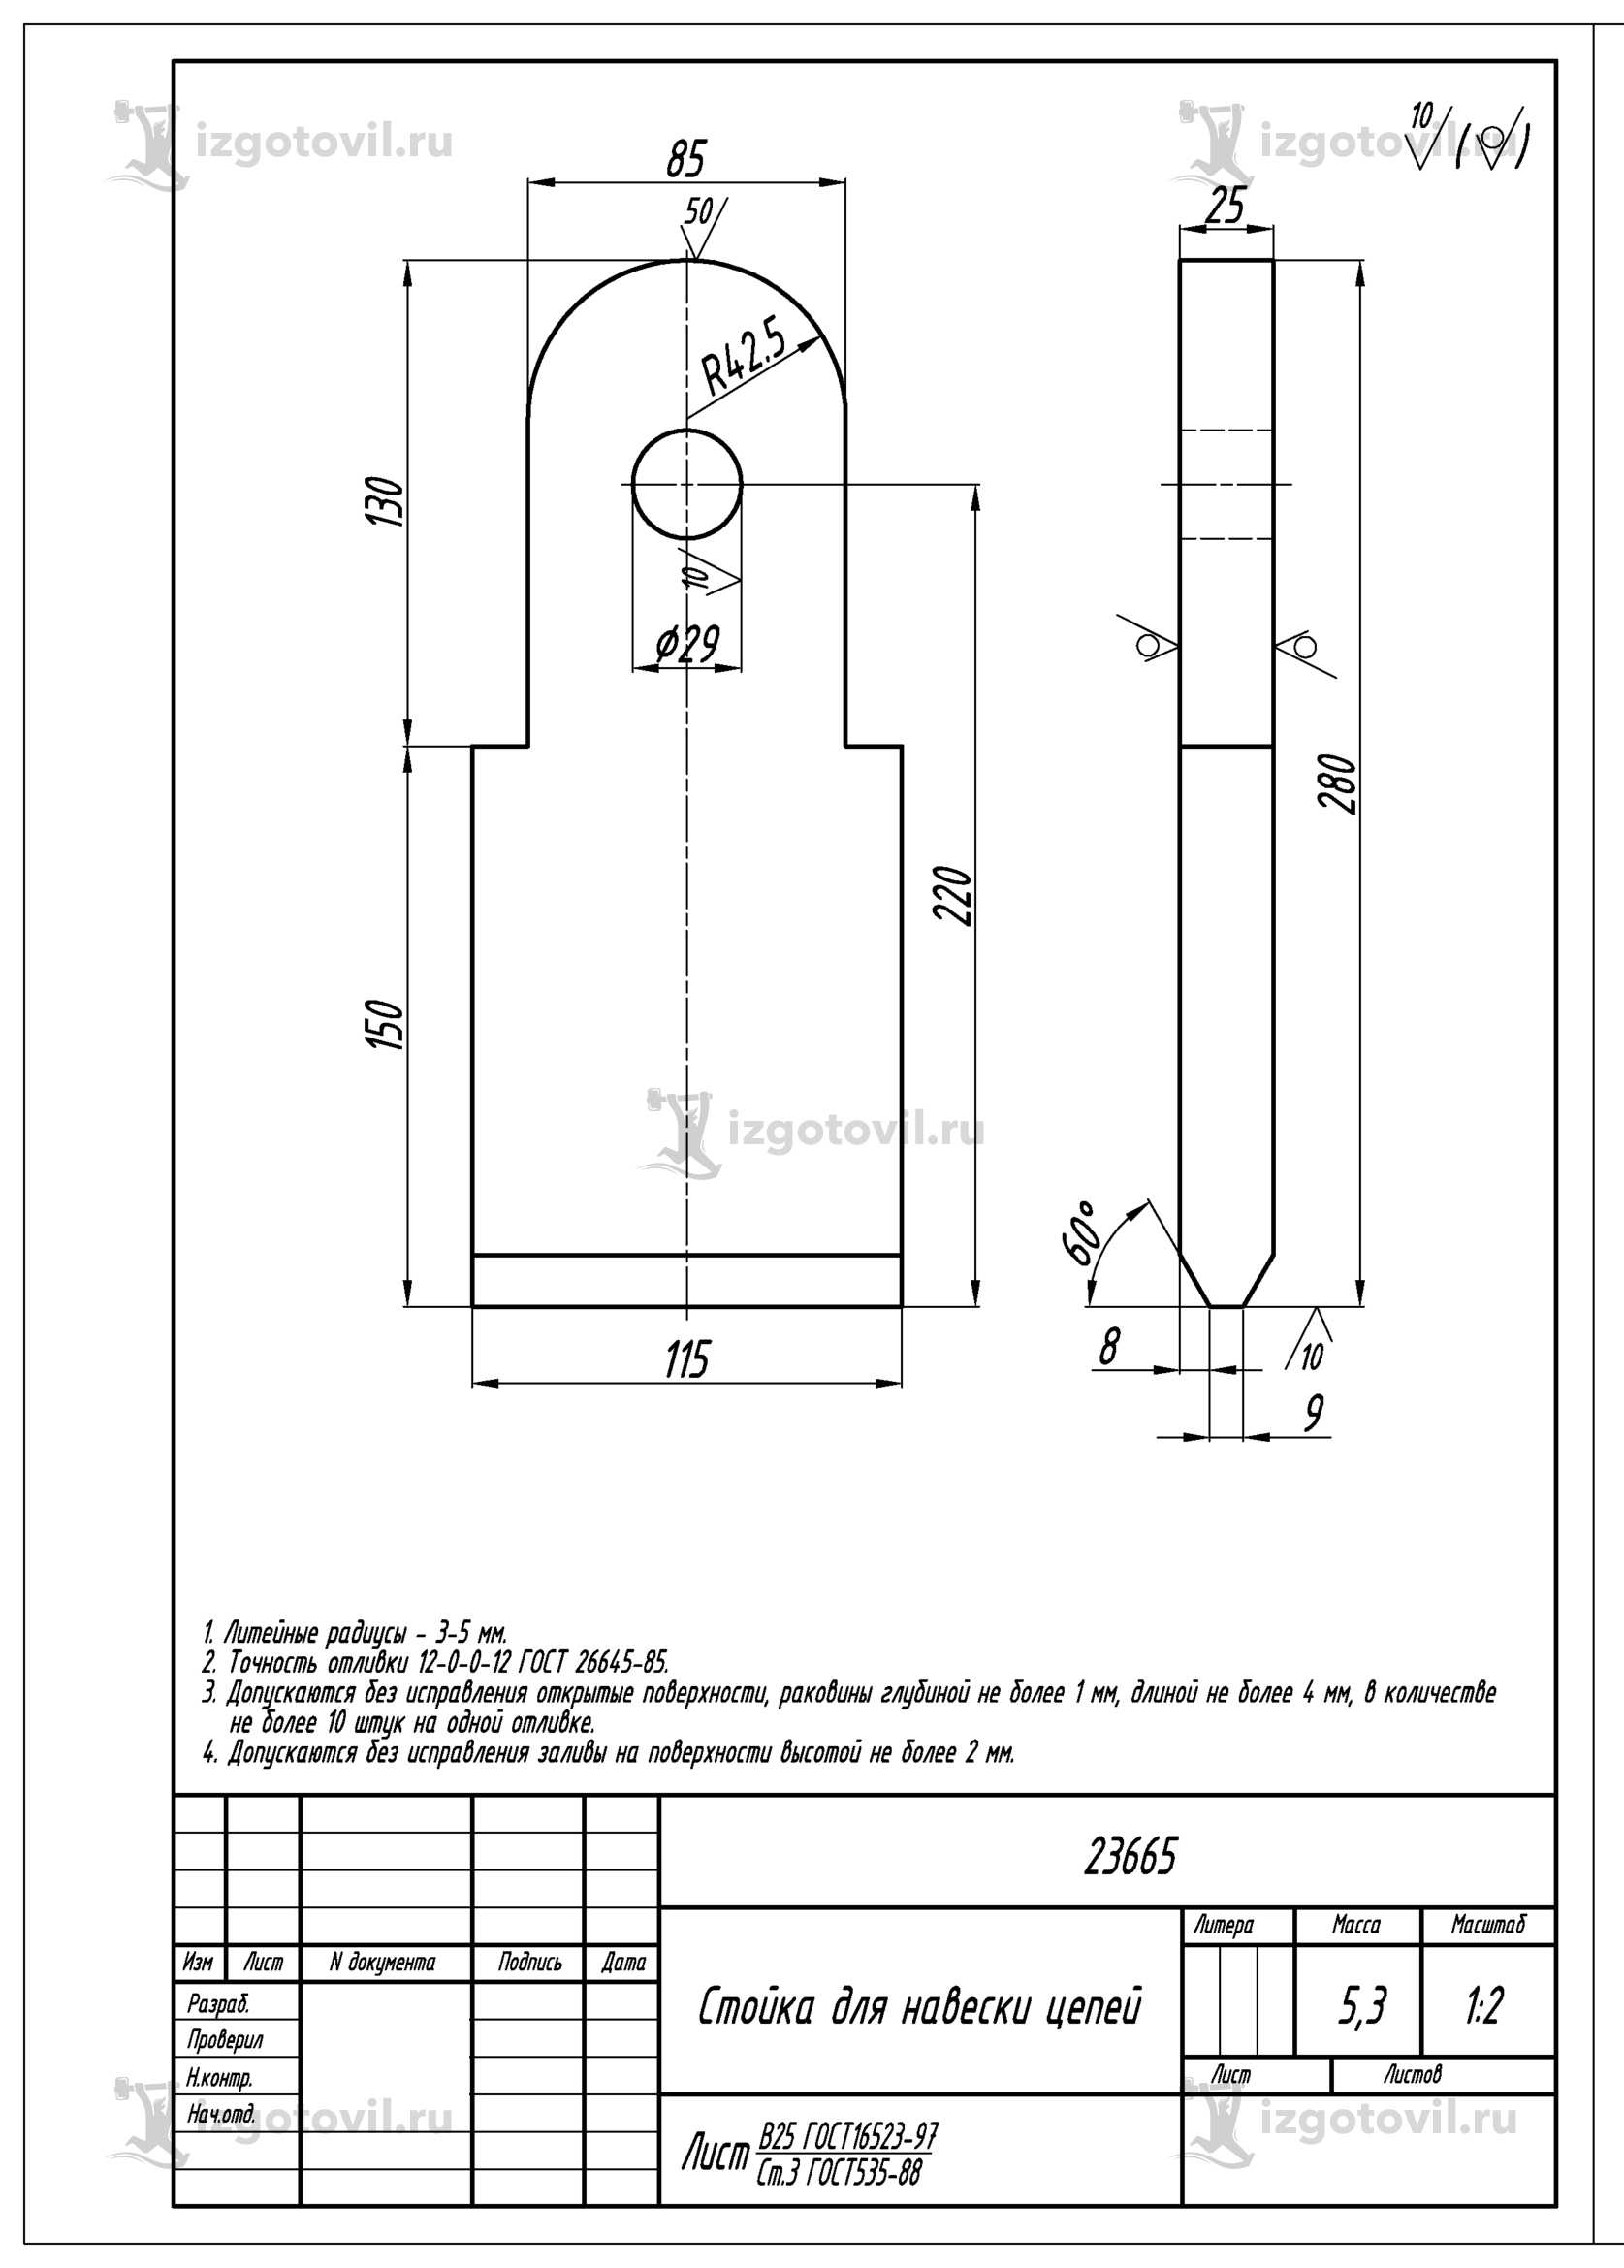 Изготовление деталей по чертежам: серьги для навески цепей и стойки для навески цепей